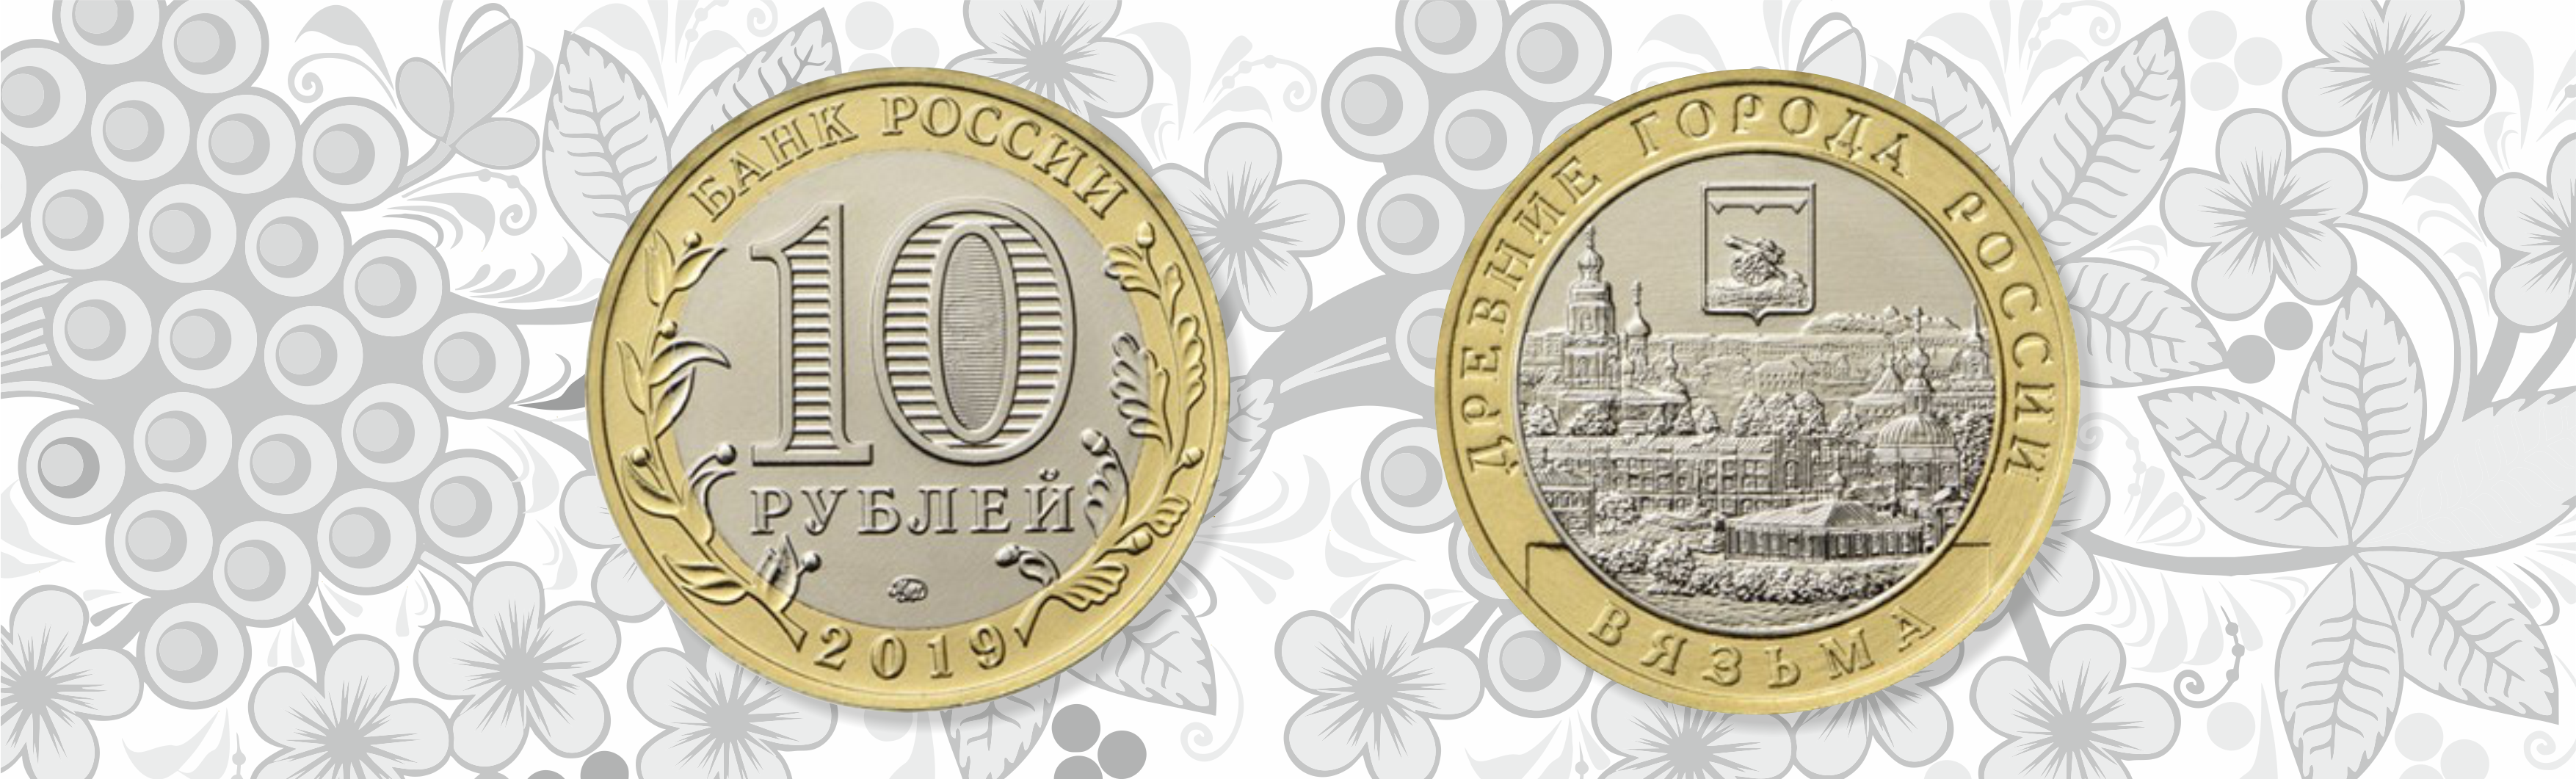 Кредит Урал Банк меняет «мелочь» на памятные монеты